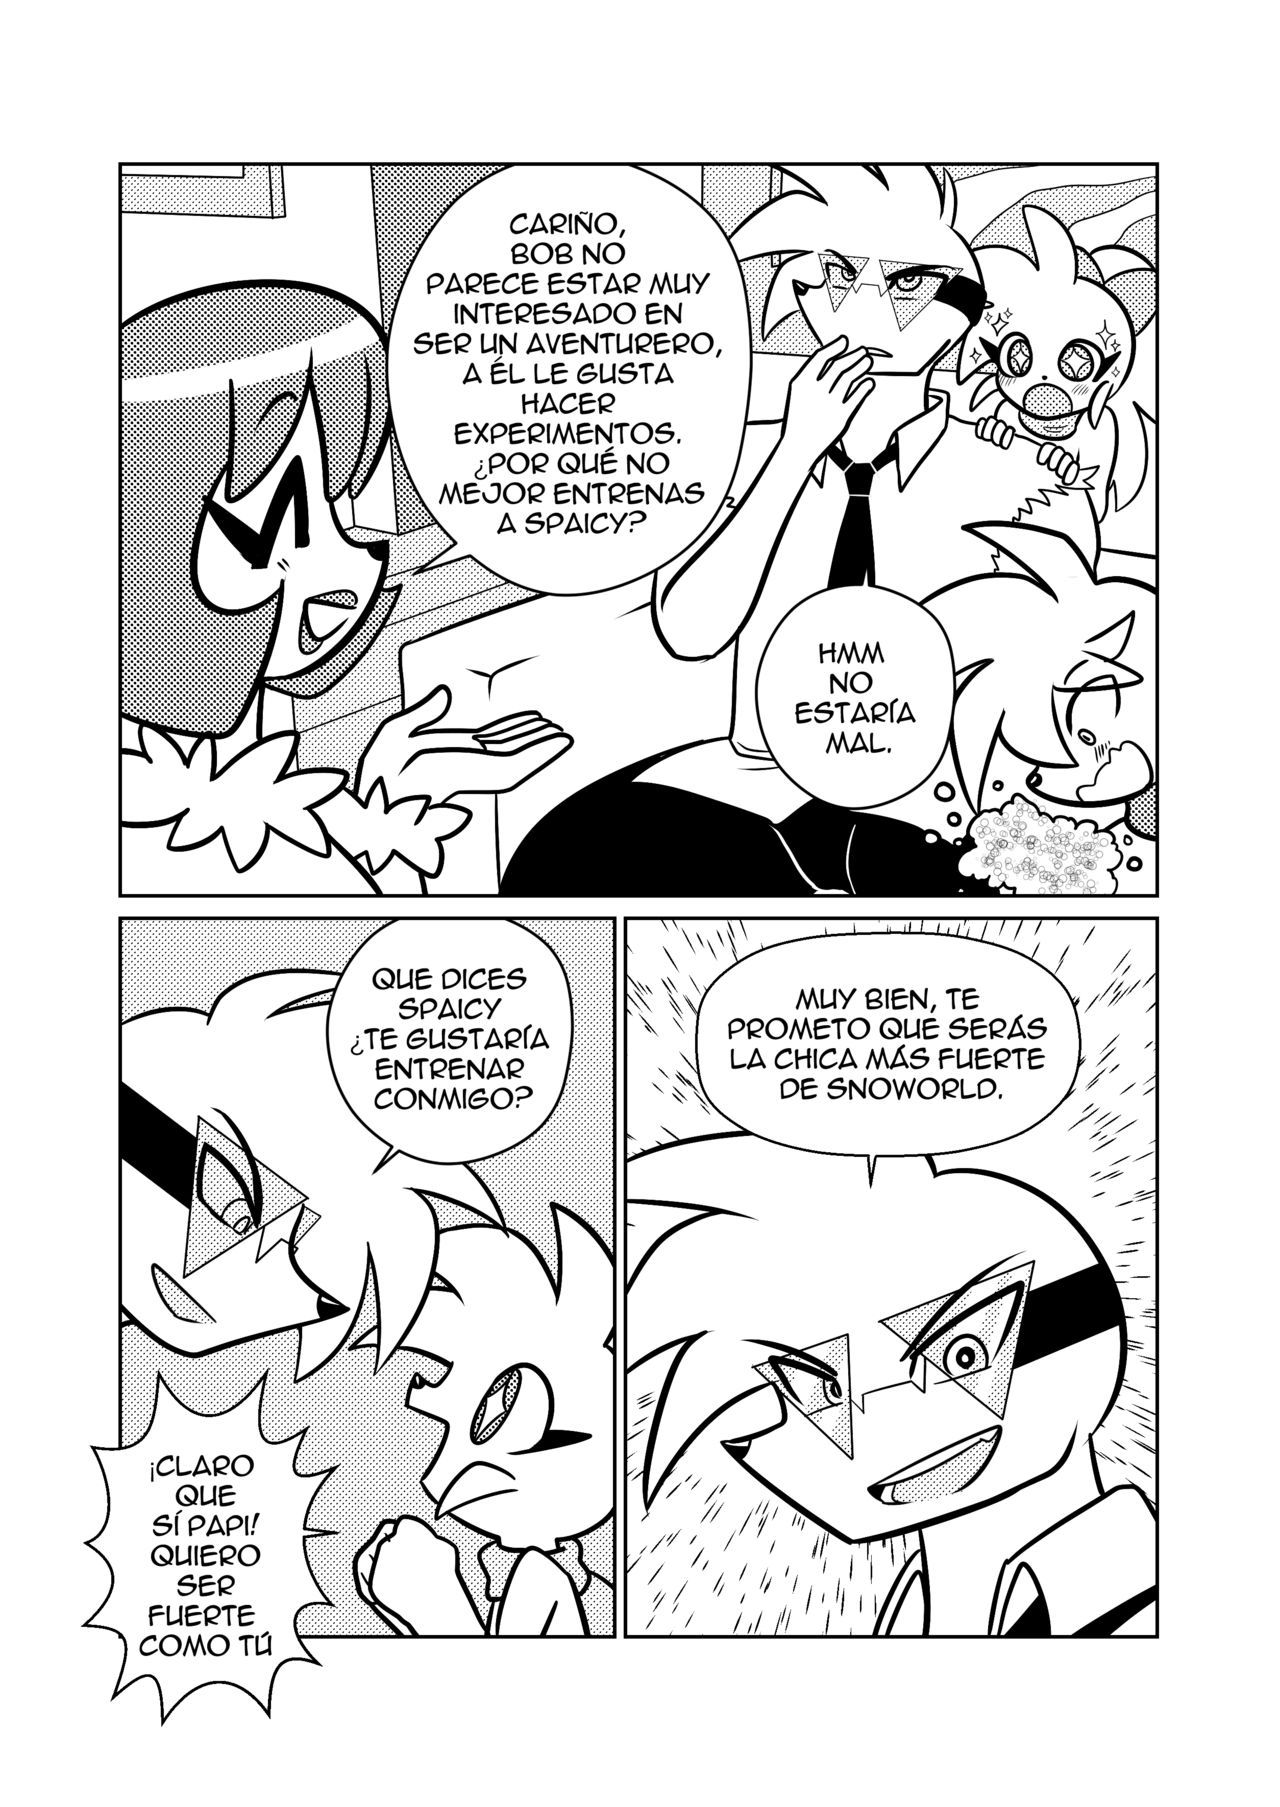 Spaicy comic (Spanish) 9